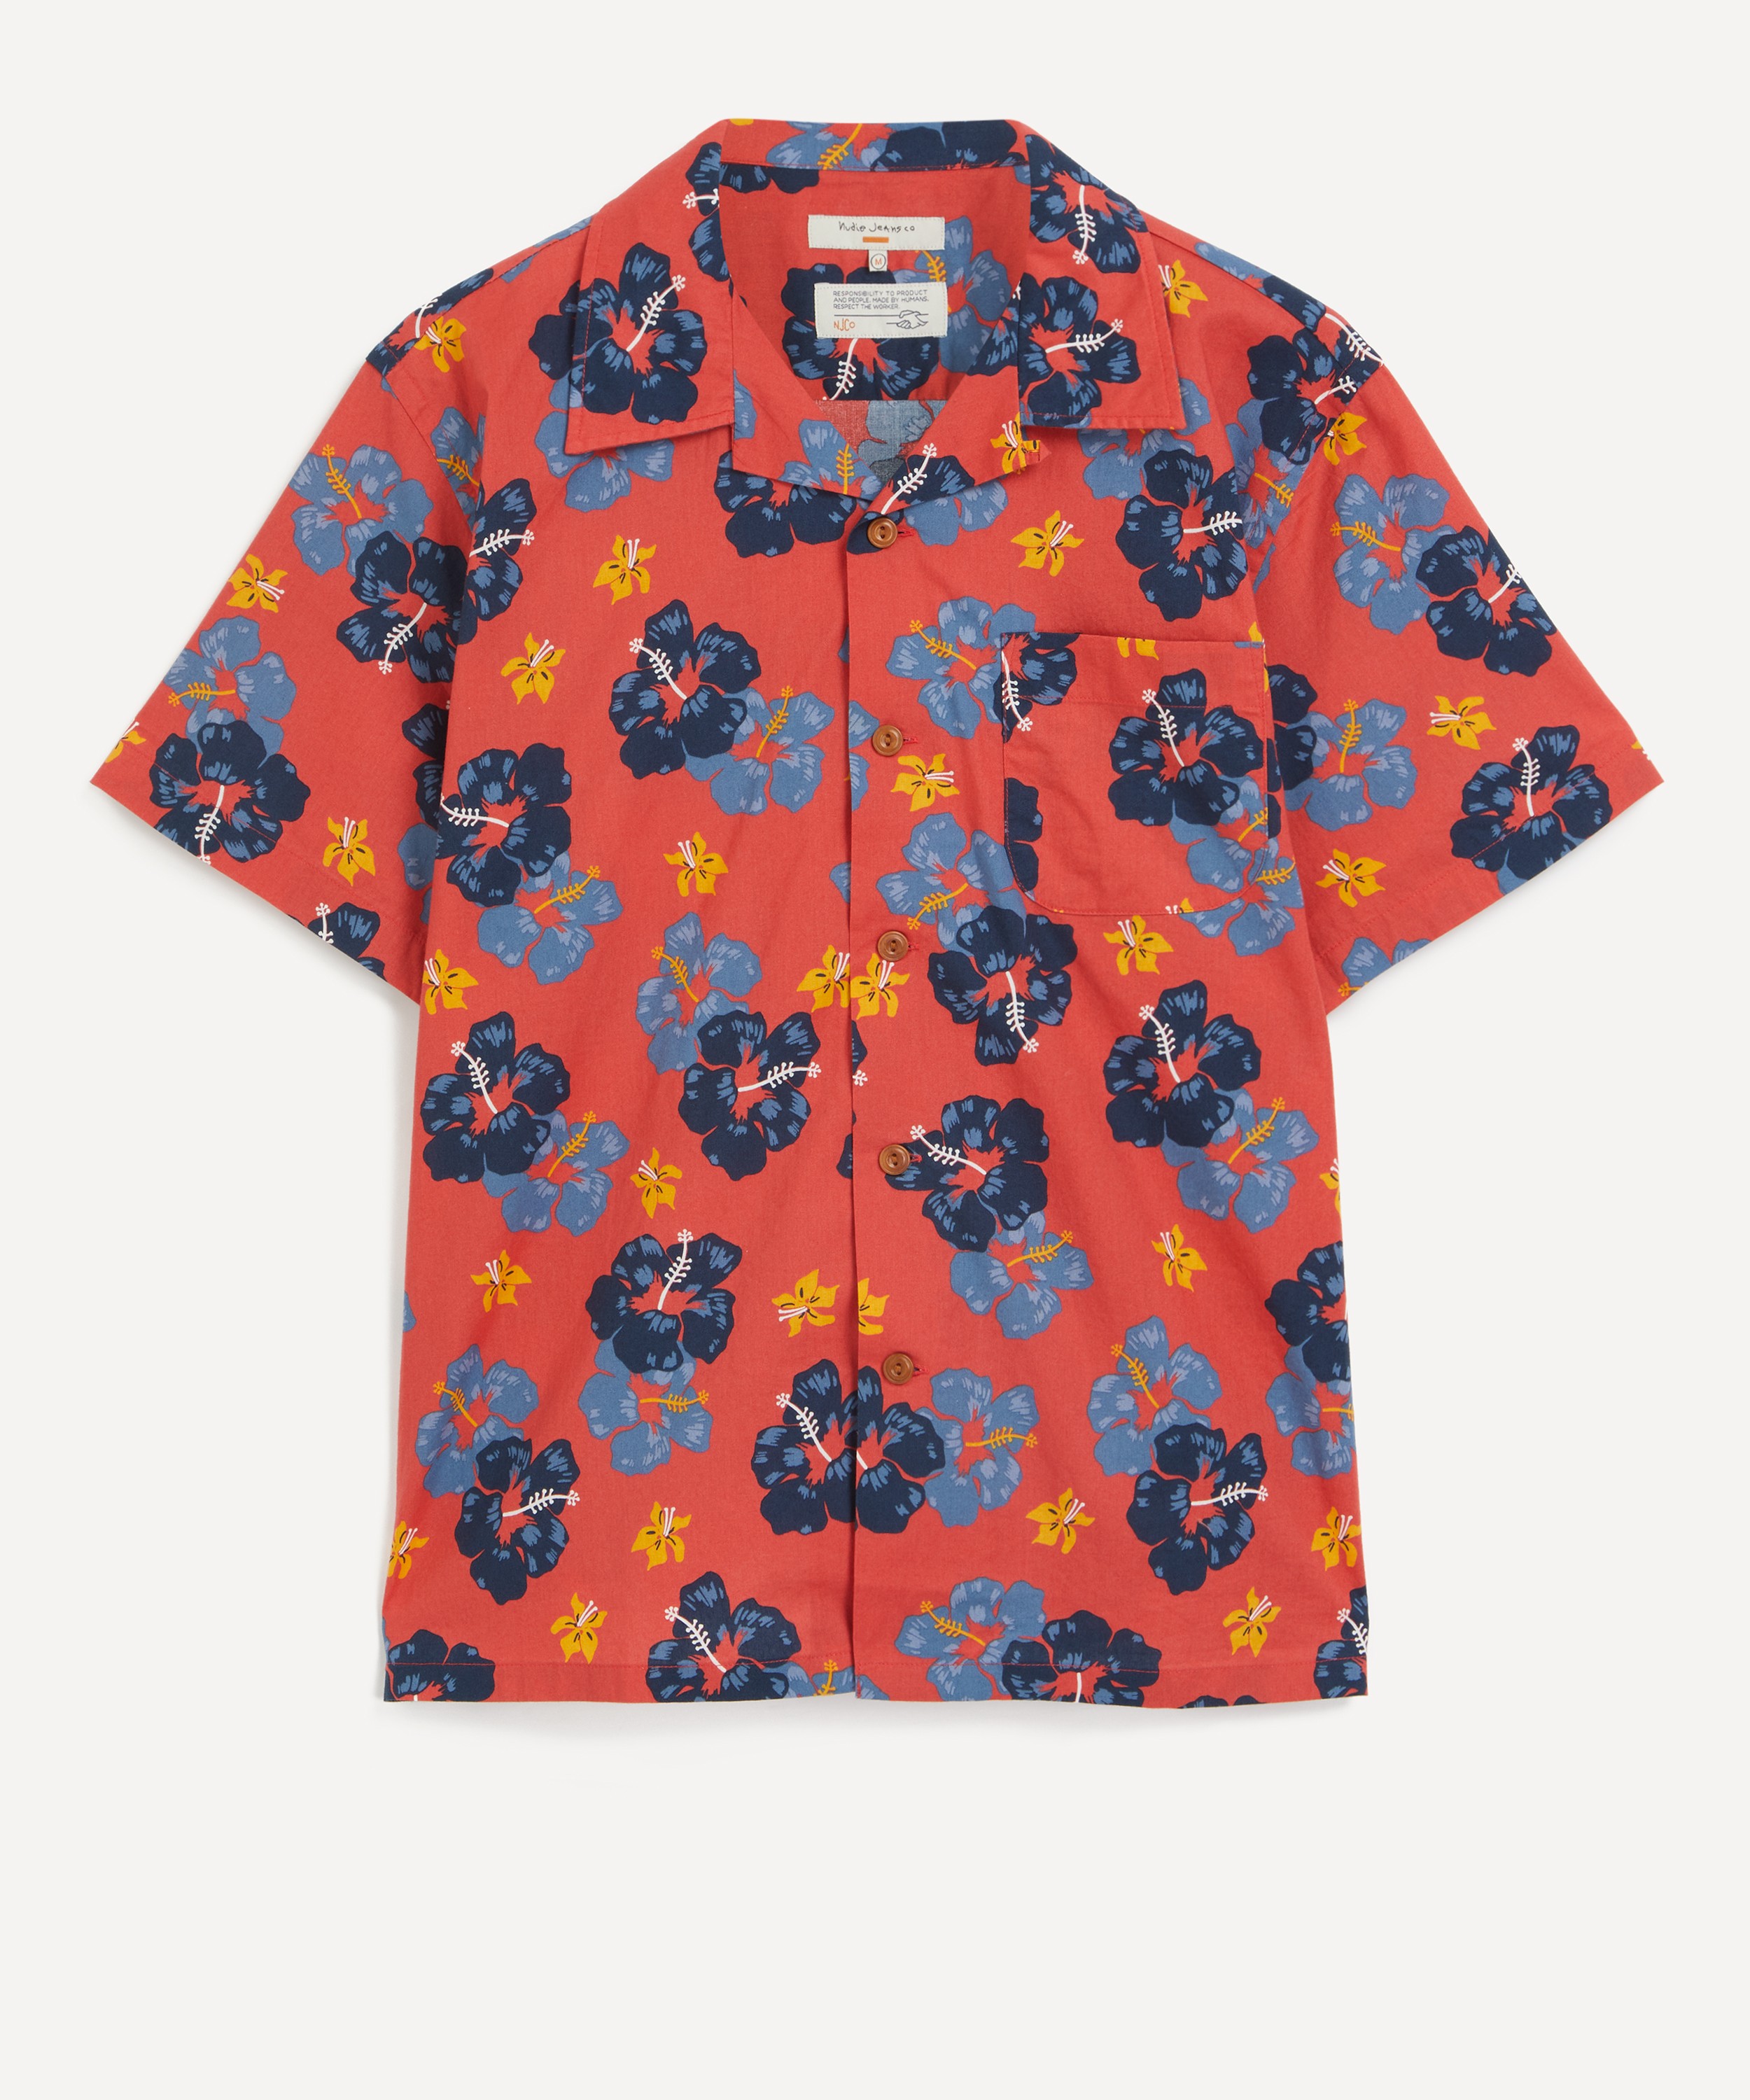 Nudie Jeans - Arthur Flower Hawaii Shirt